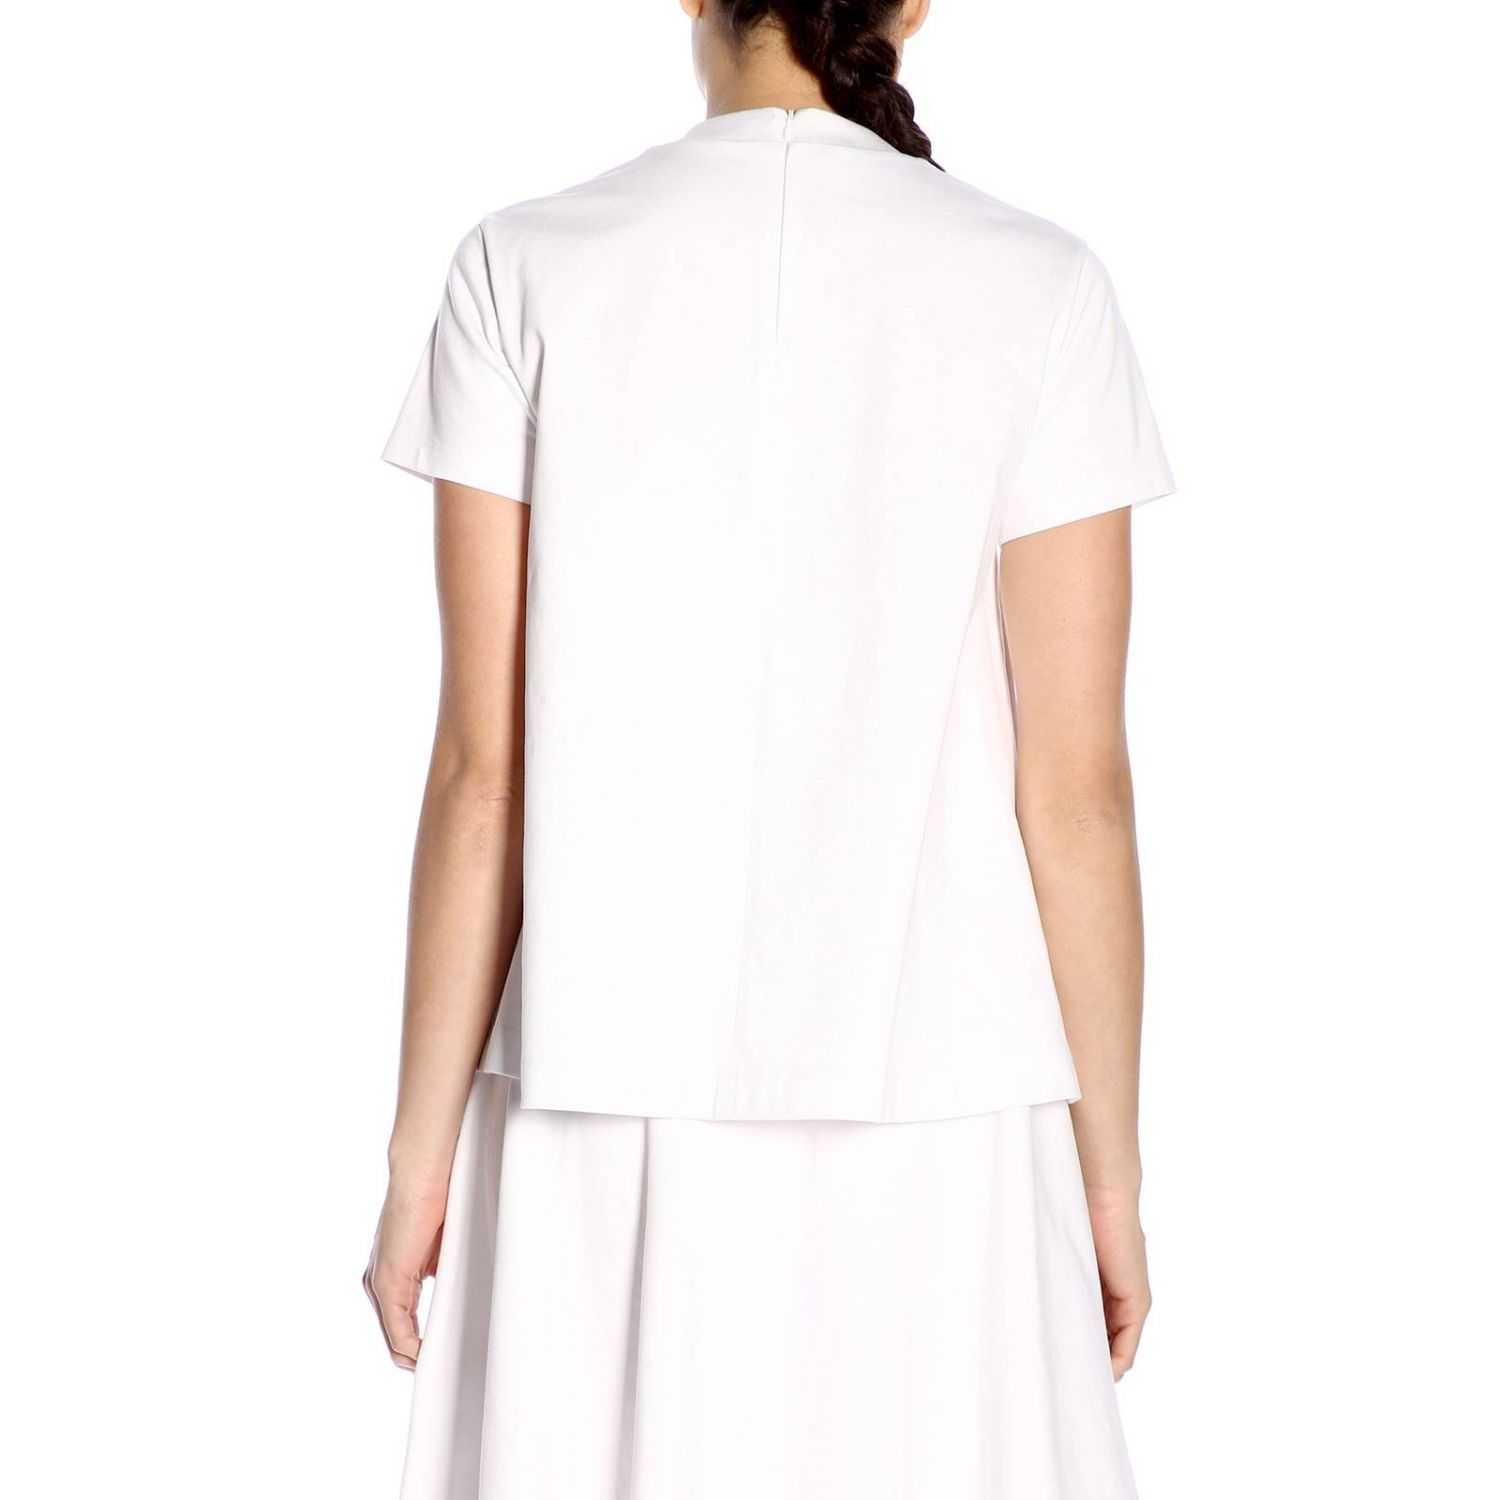 PRADA: T-shirt women | T-Shirt Prada Women White | T-Shirt Prada 39502 ...